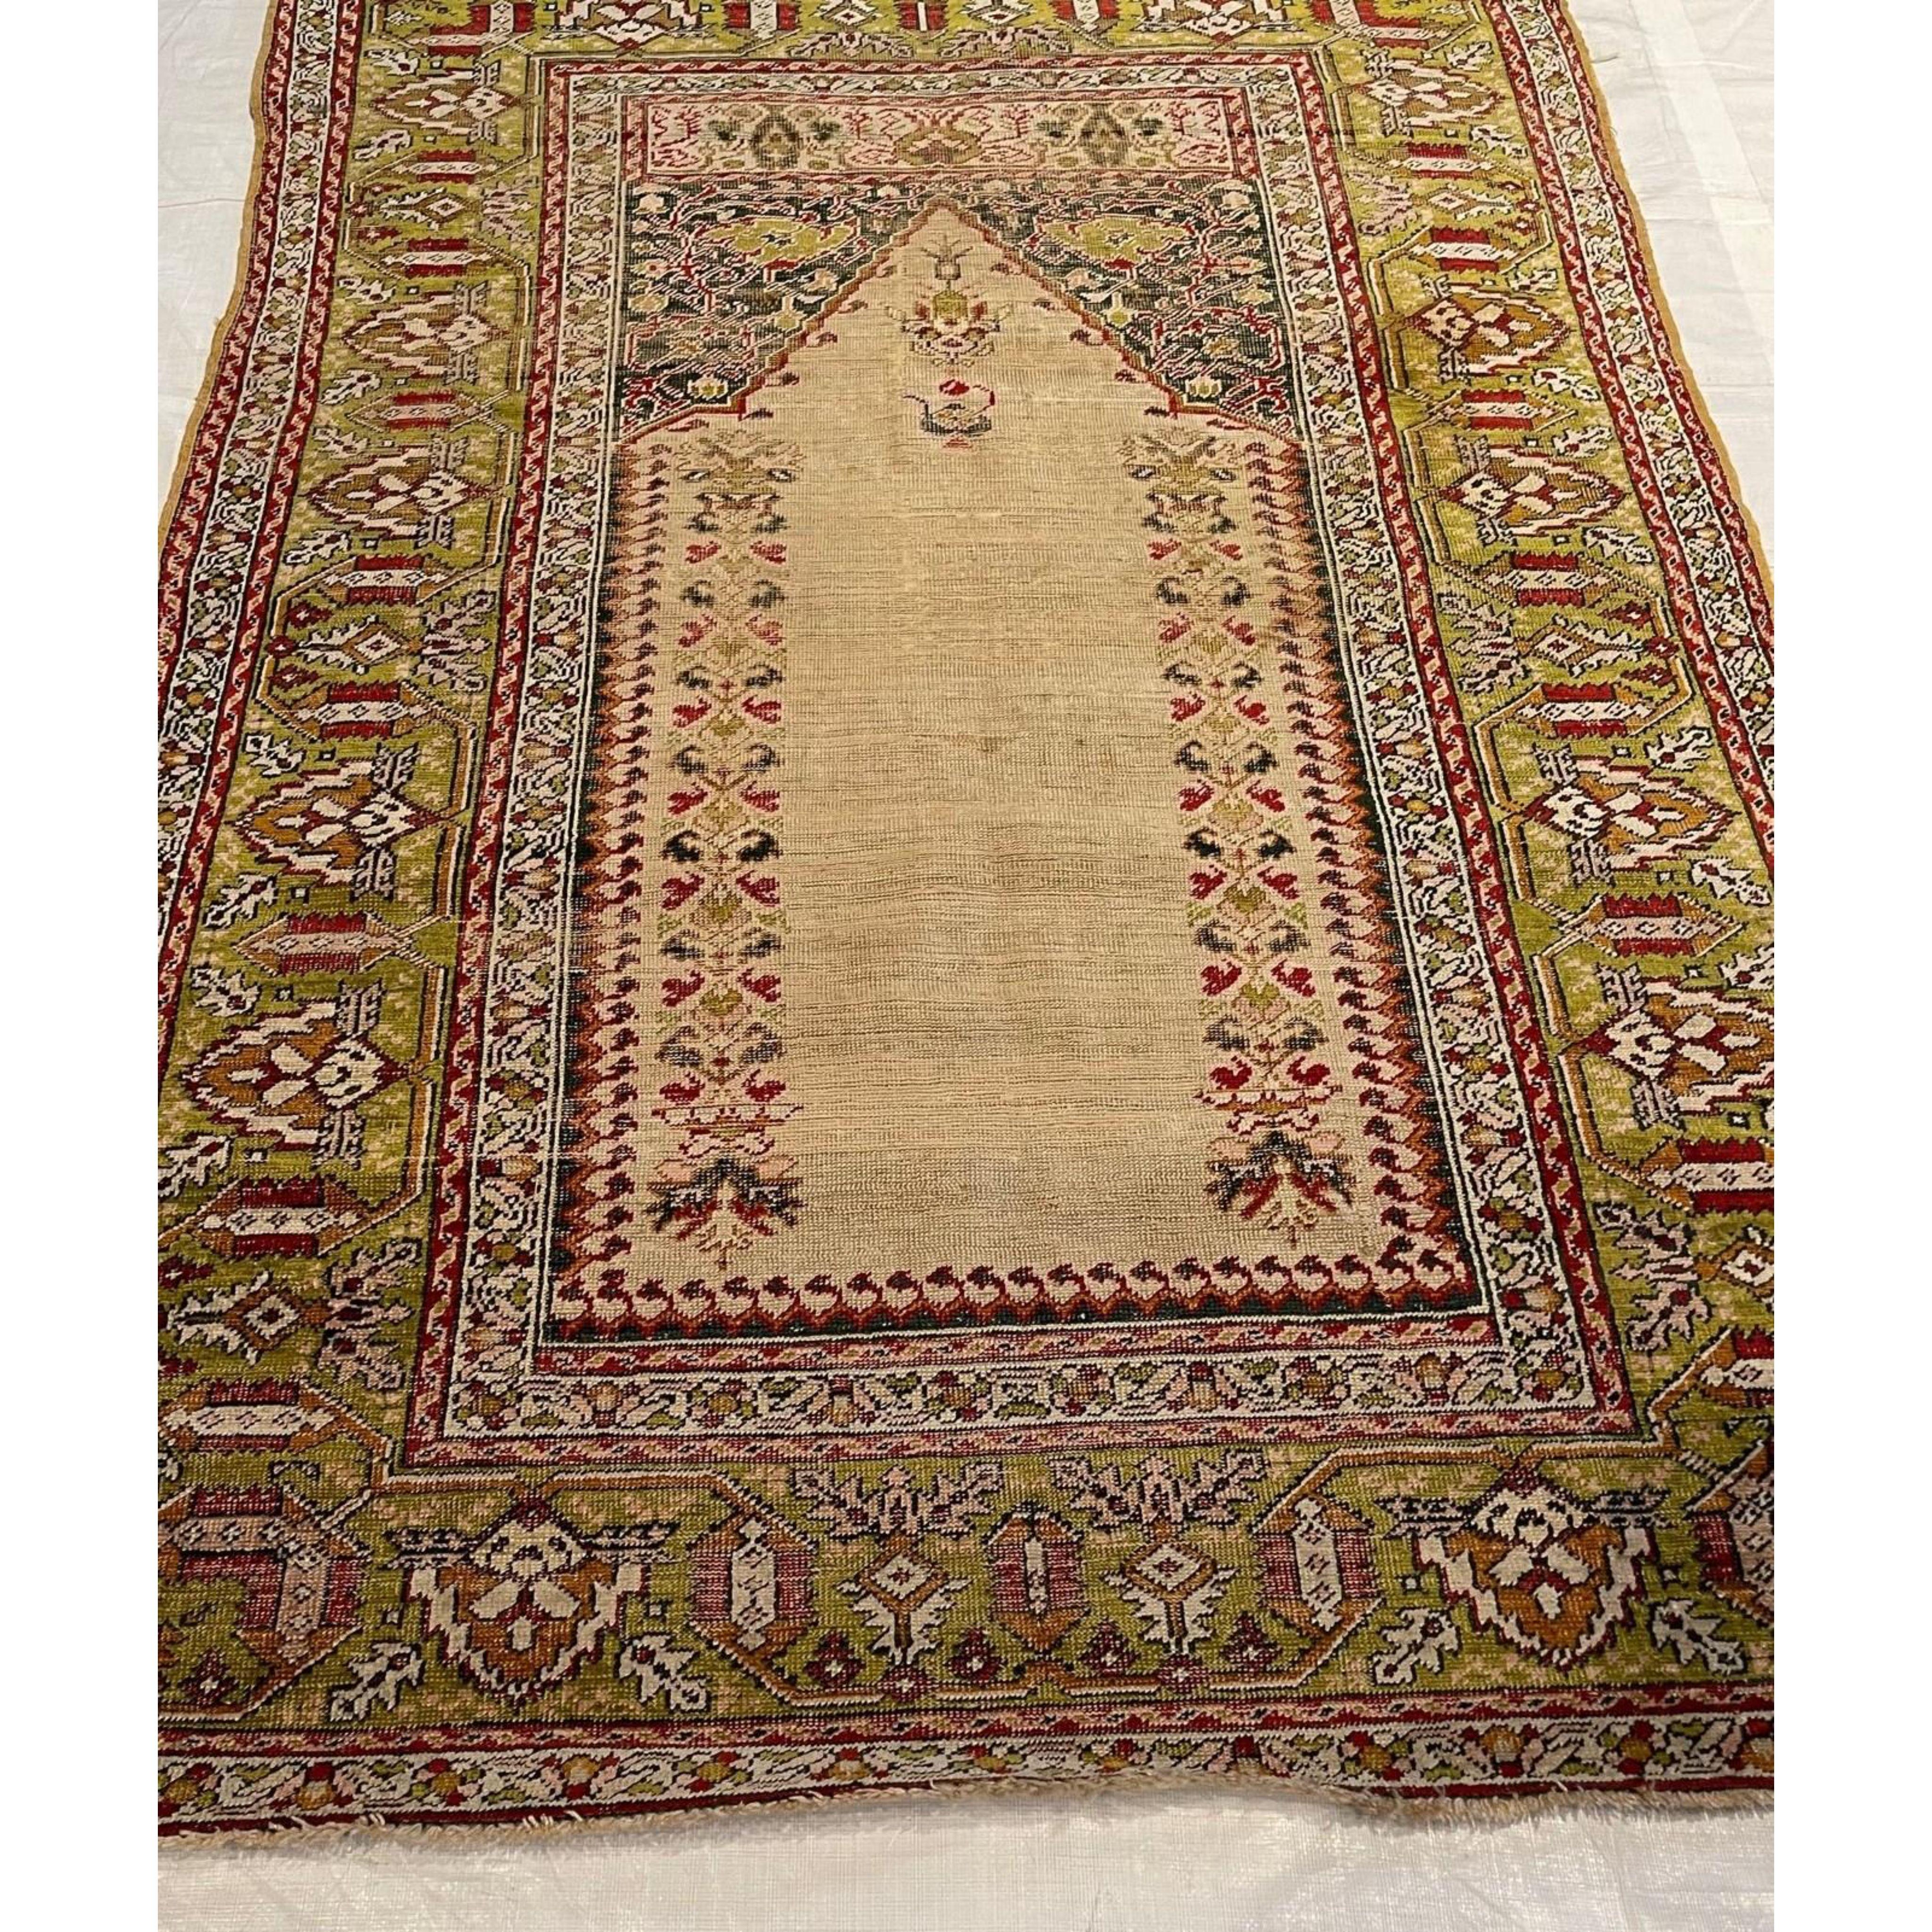 Türkische Teppiche (auch als anatolische Teppiche bezeichnet) sind wohl die Teppiche, mit denen alles begann. Diese Teppiche gehörten zu der ersten Welle von antiken Orientteppichen, die nach Europa exportiert wurden. Die alten türkischen Teppiche